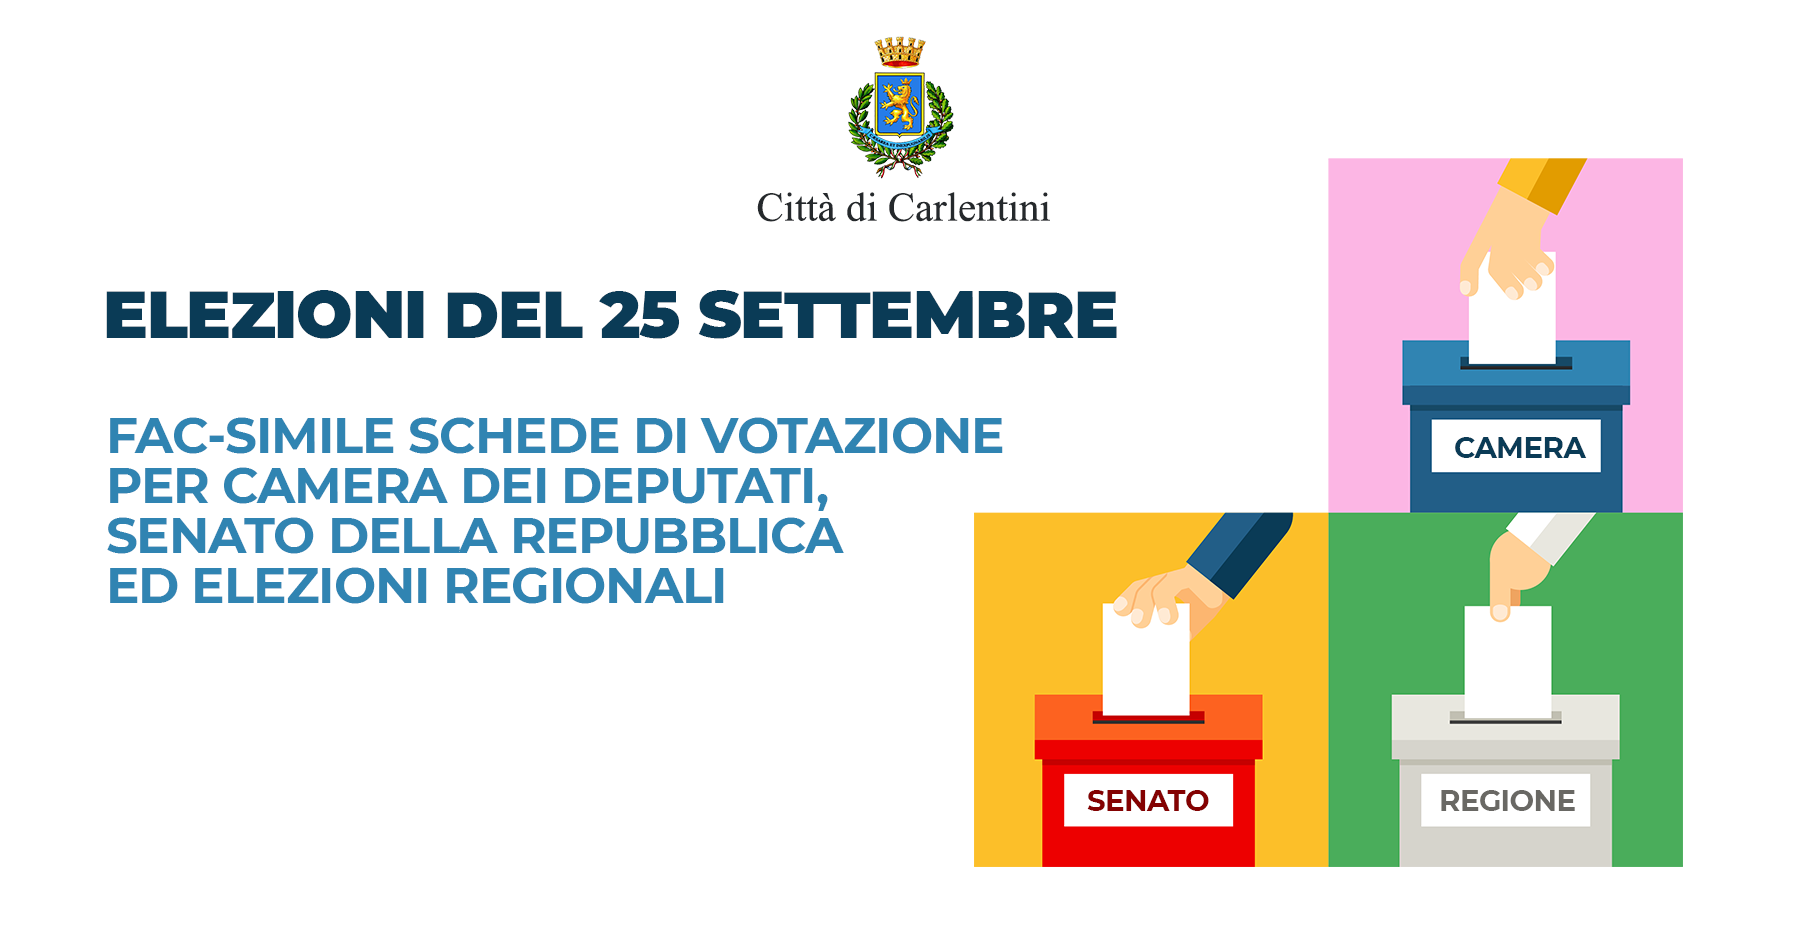 Elezioni Nazionali e Regionali del 25 settembre: Fac-simile delle schede di votazione